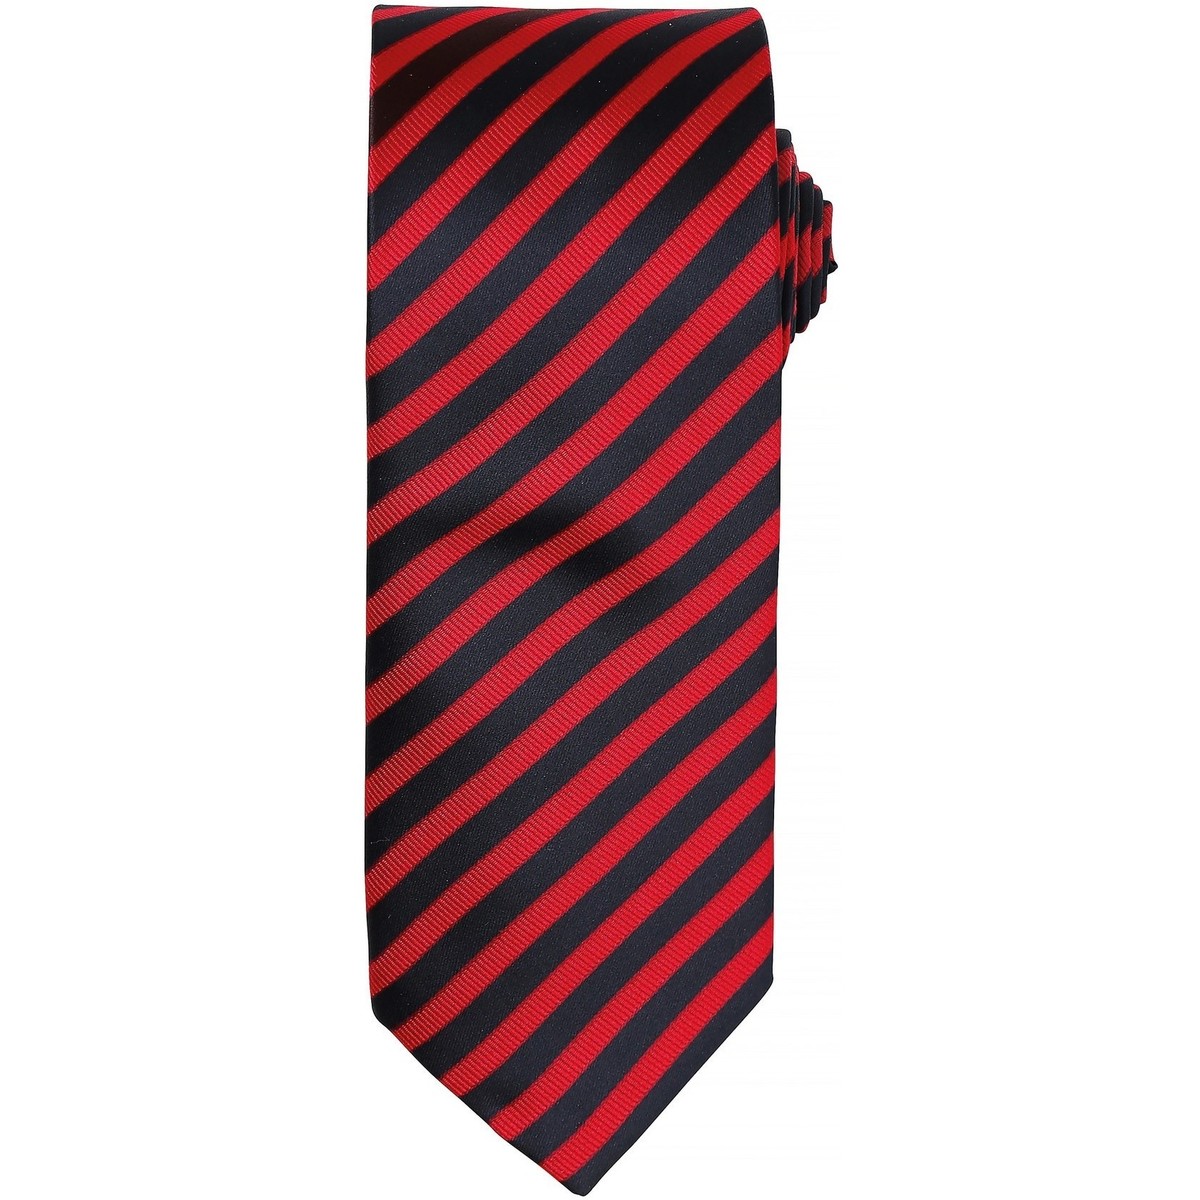 Vêtements Homme Cravates et accessoires Premier PR782 Noir